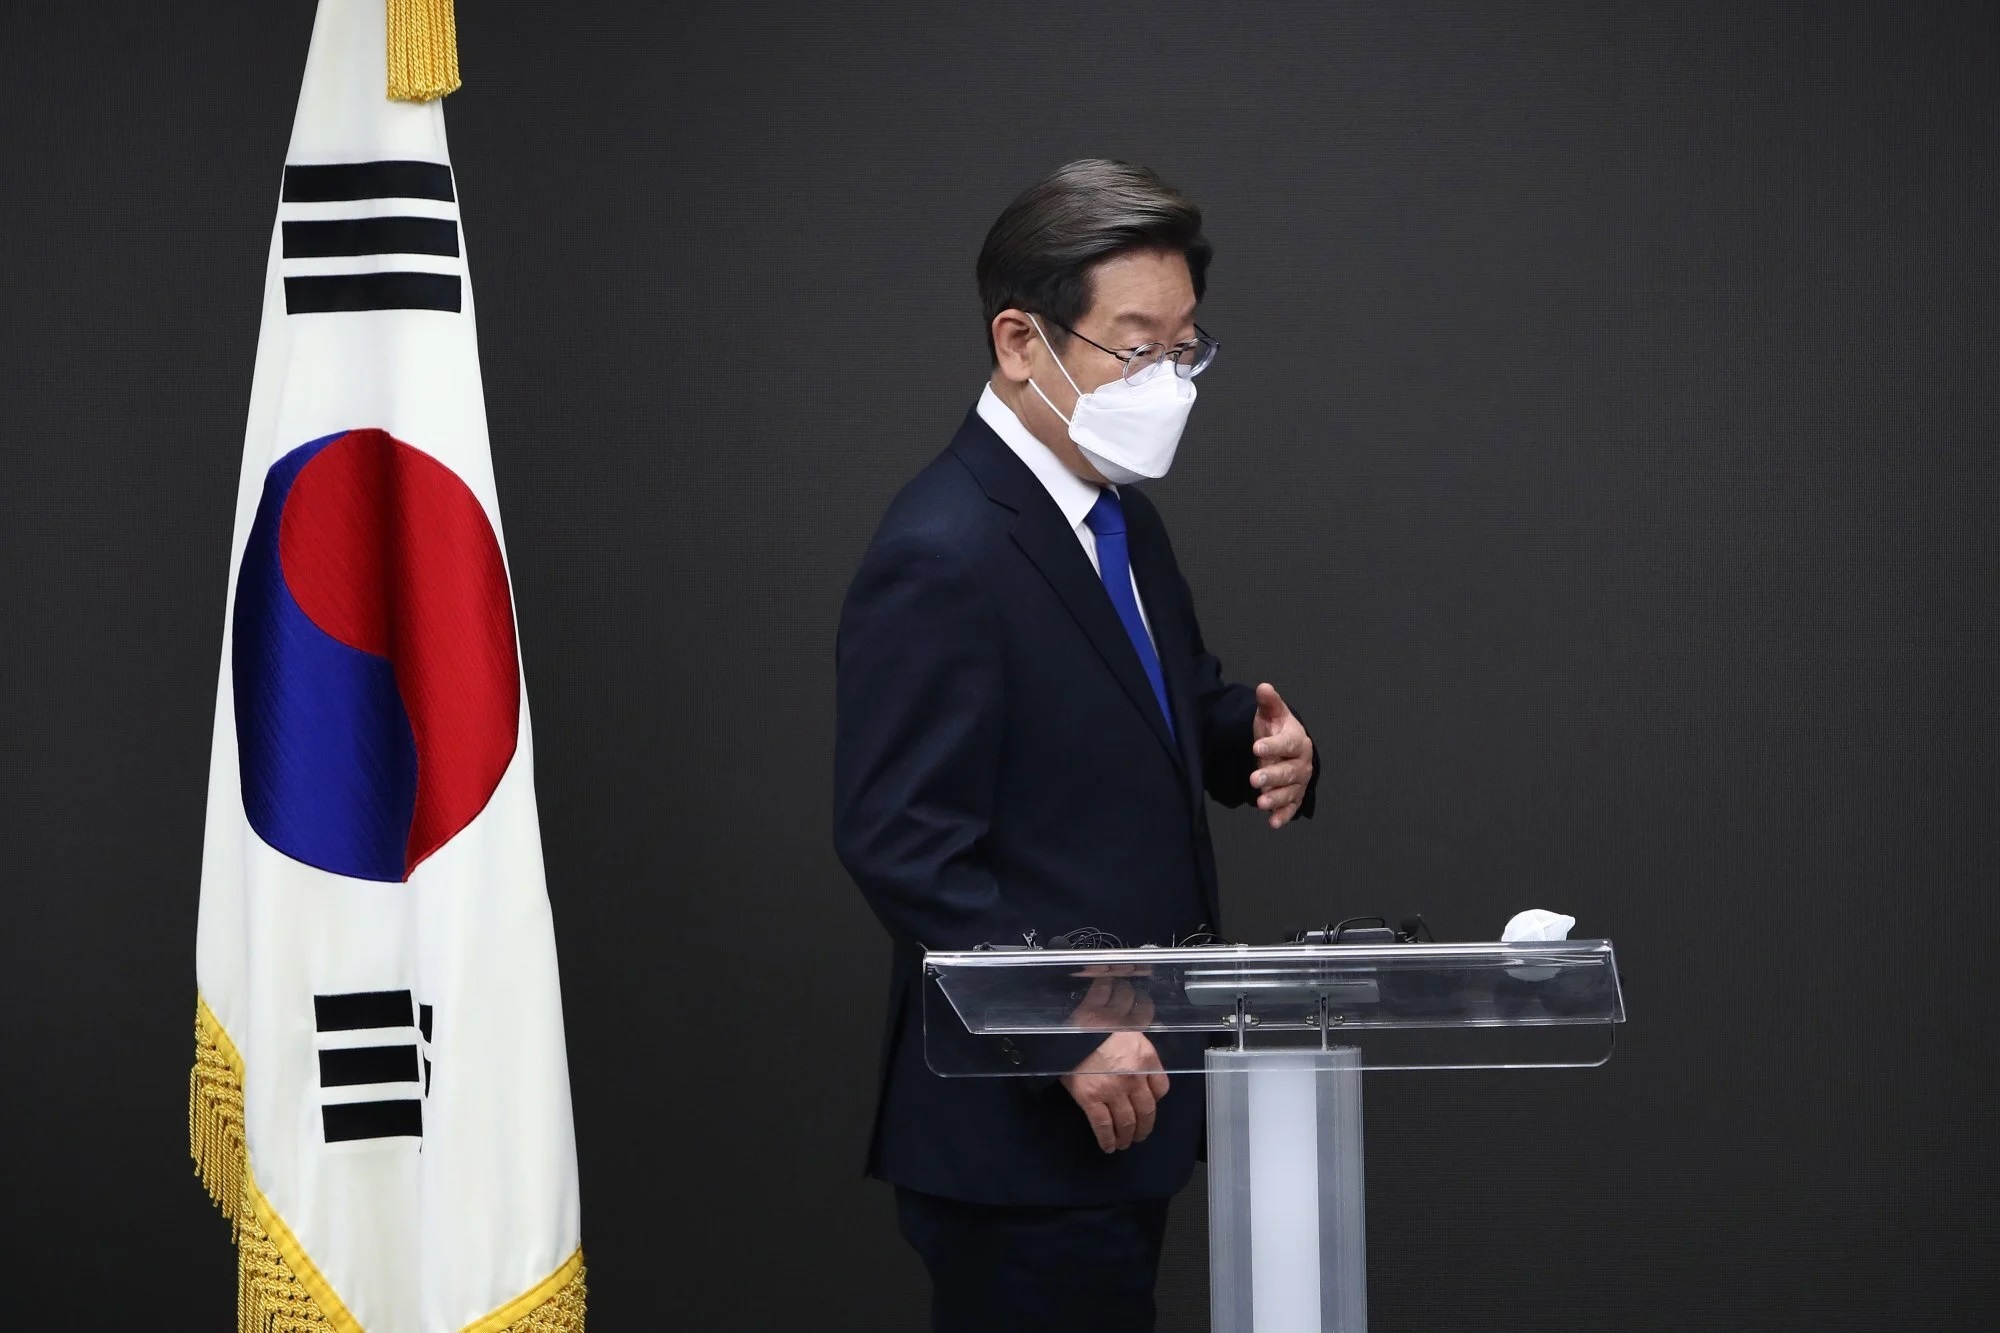 Ứng cử viên tổng thống Hàn Quốc Lee Jae-myung của Đảng Dân chủ thừa nhận thất bại tại trụ sở ở ...